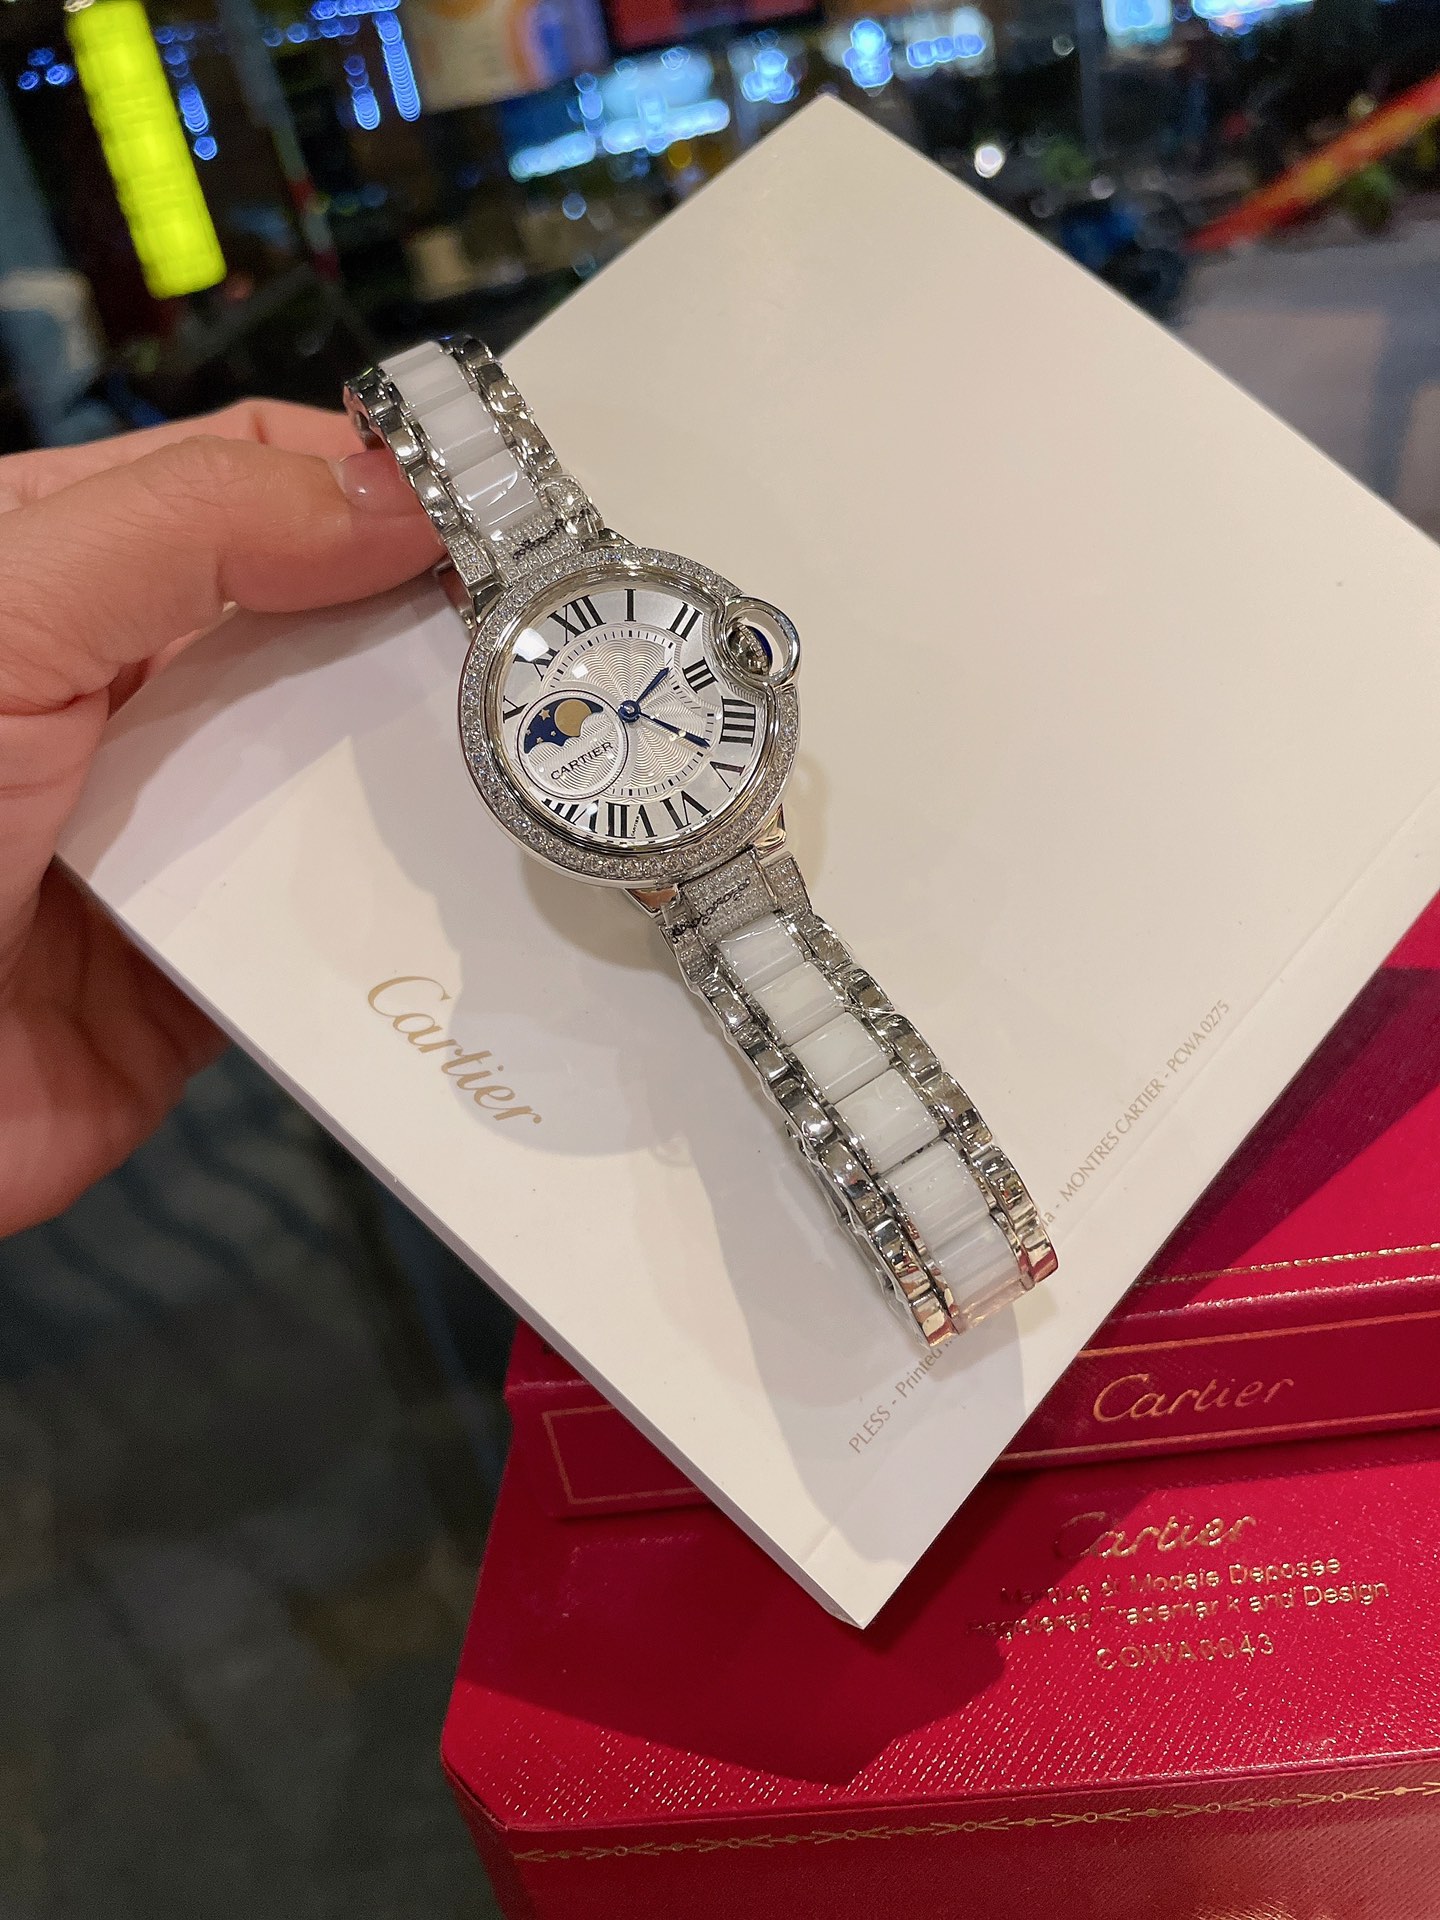 CARTIERカルティエ 真贋 時計スーパーコピー フランス 薄い腕時計 スチールバンド レザー 新品 ホワイト_3